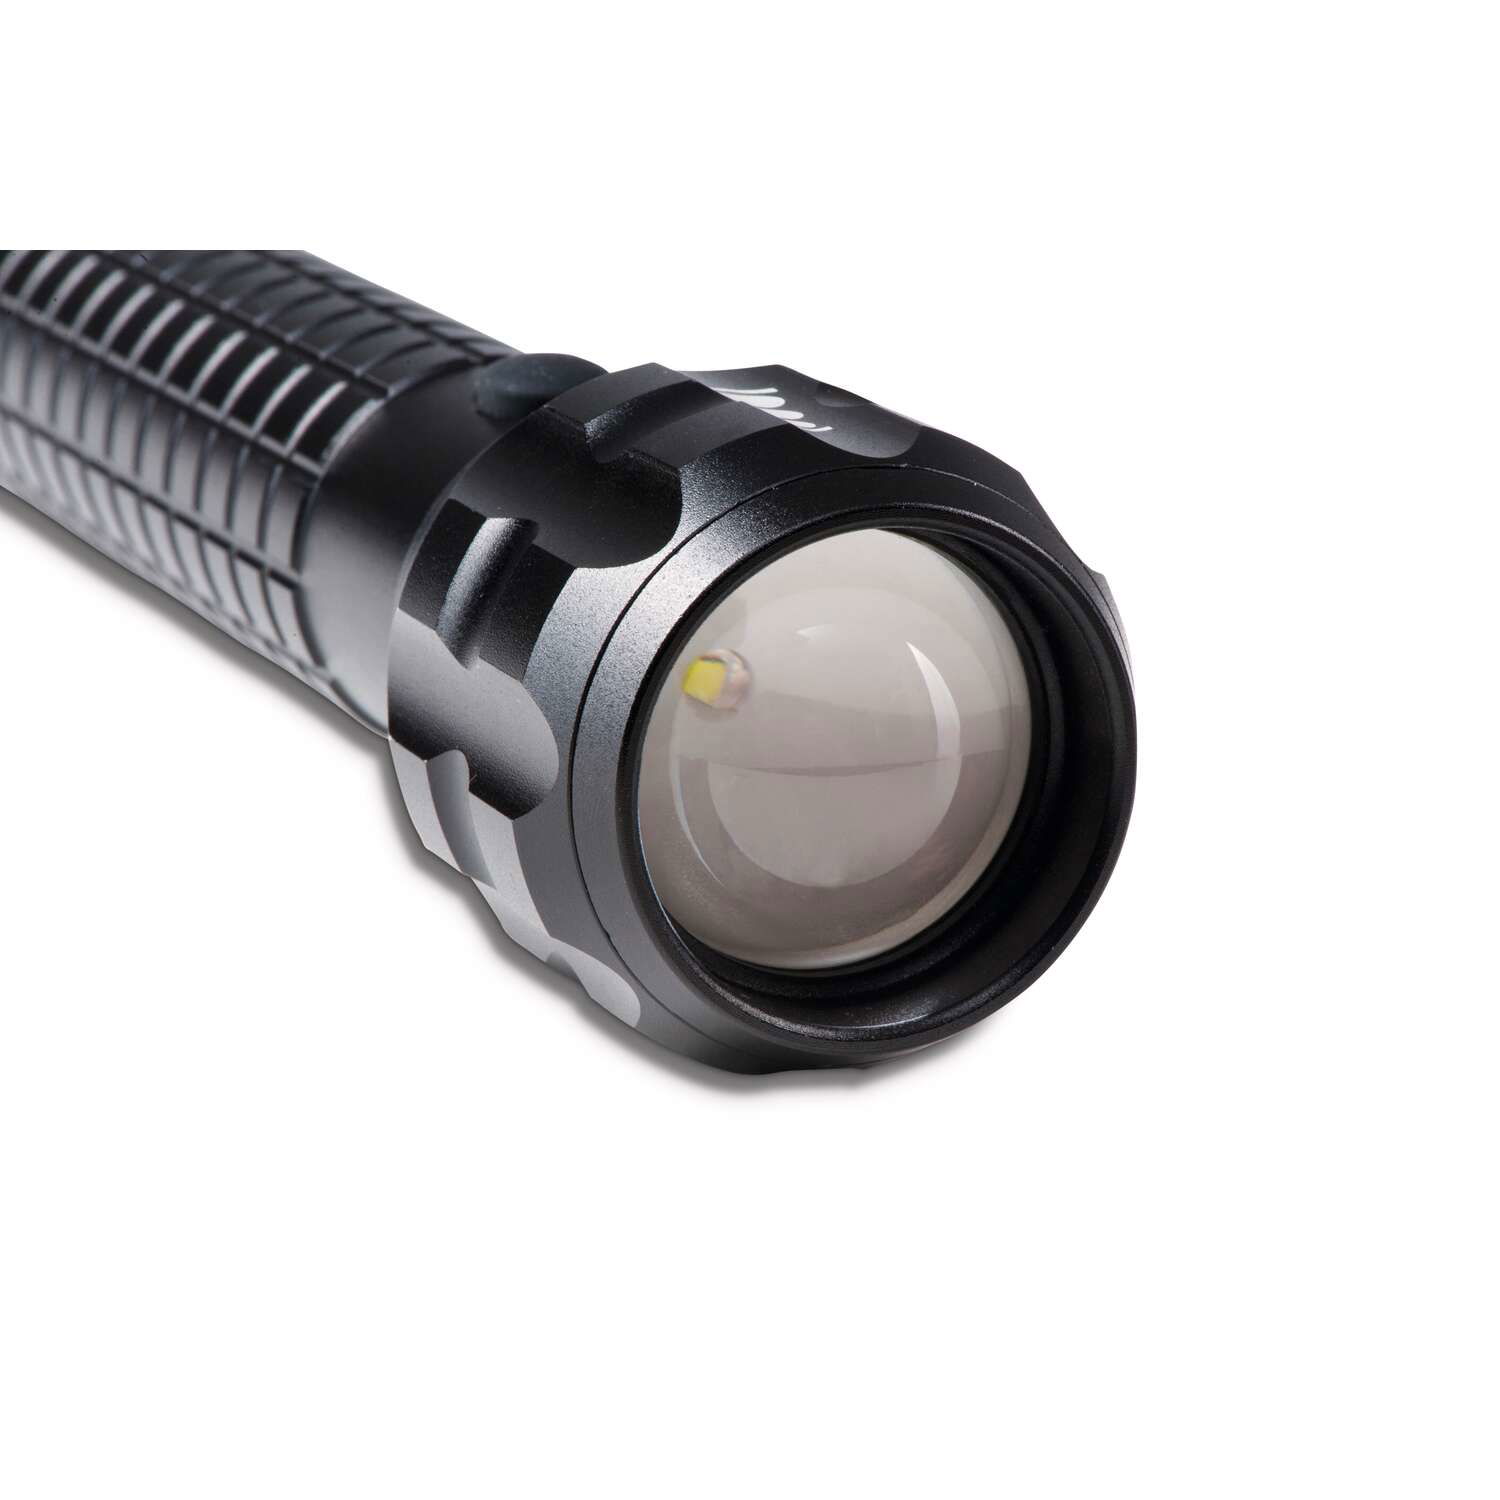 LED-Taschenlampe MAULkronos M, 21 cm, 5 W, bis zu 236 m